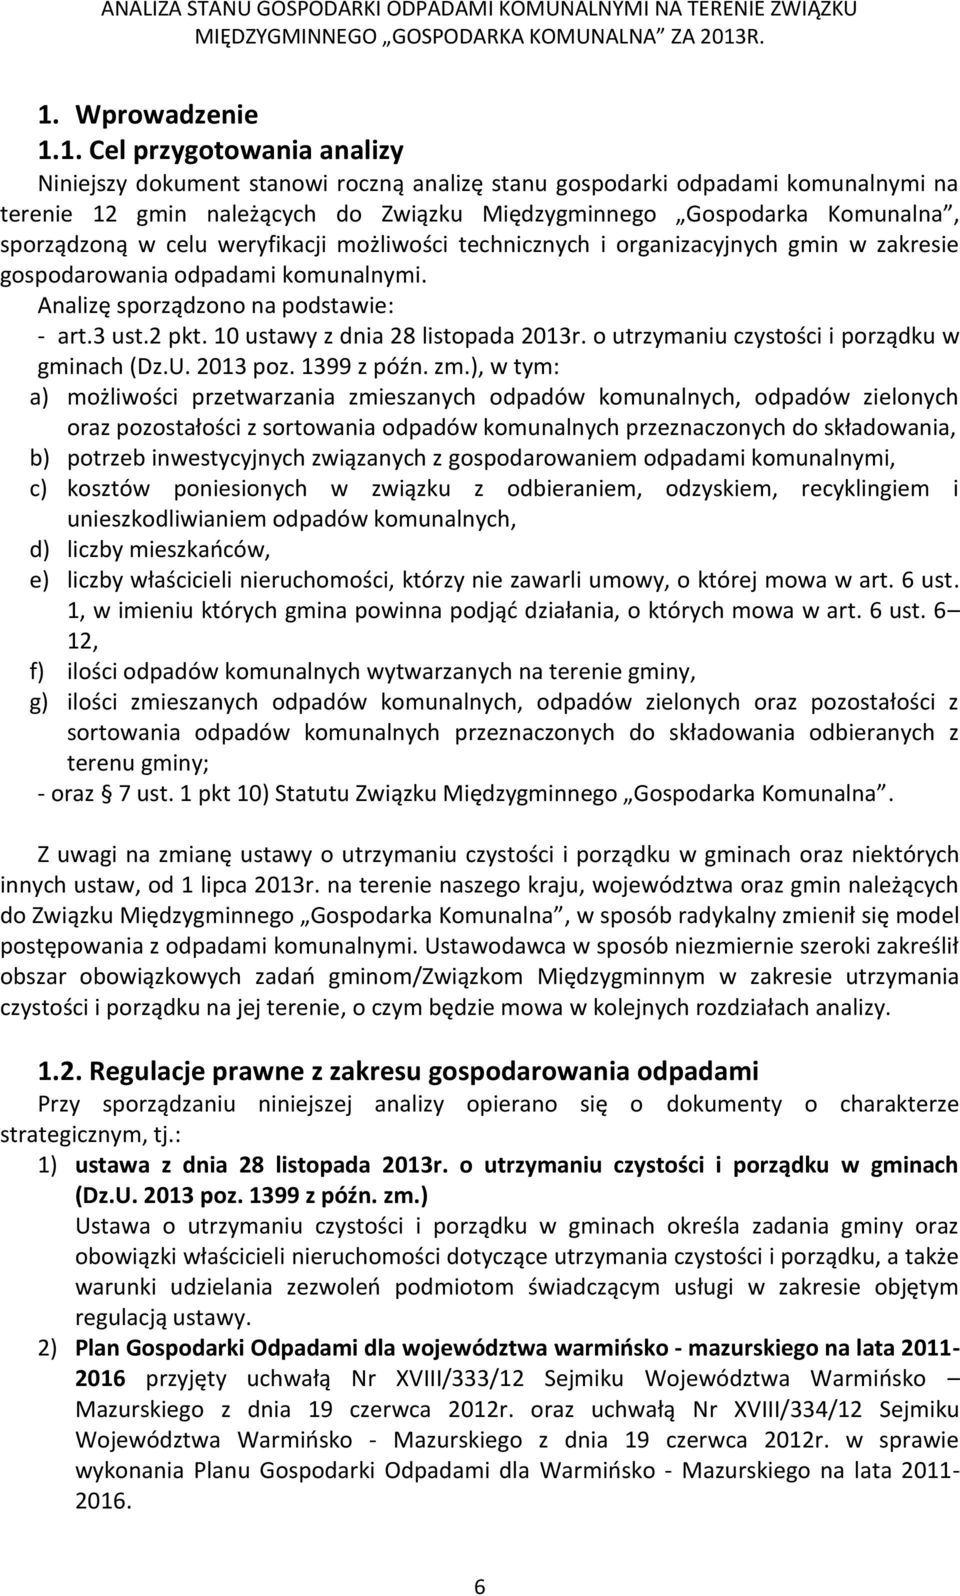 10 ustawy z dnia 28 listopada 2013r. o utrzymaniu czystości i porządku w gminach (Dz.U. 2013 poz. 1399 z późn. zm.